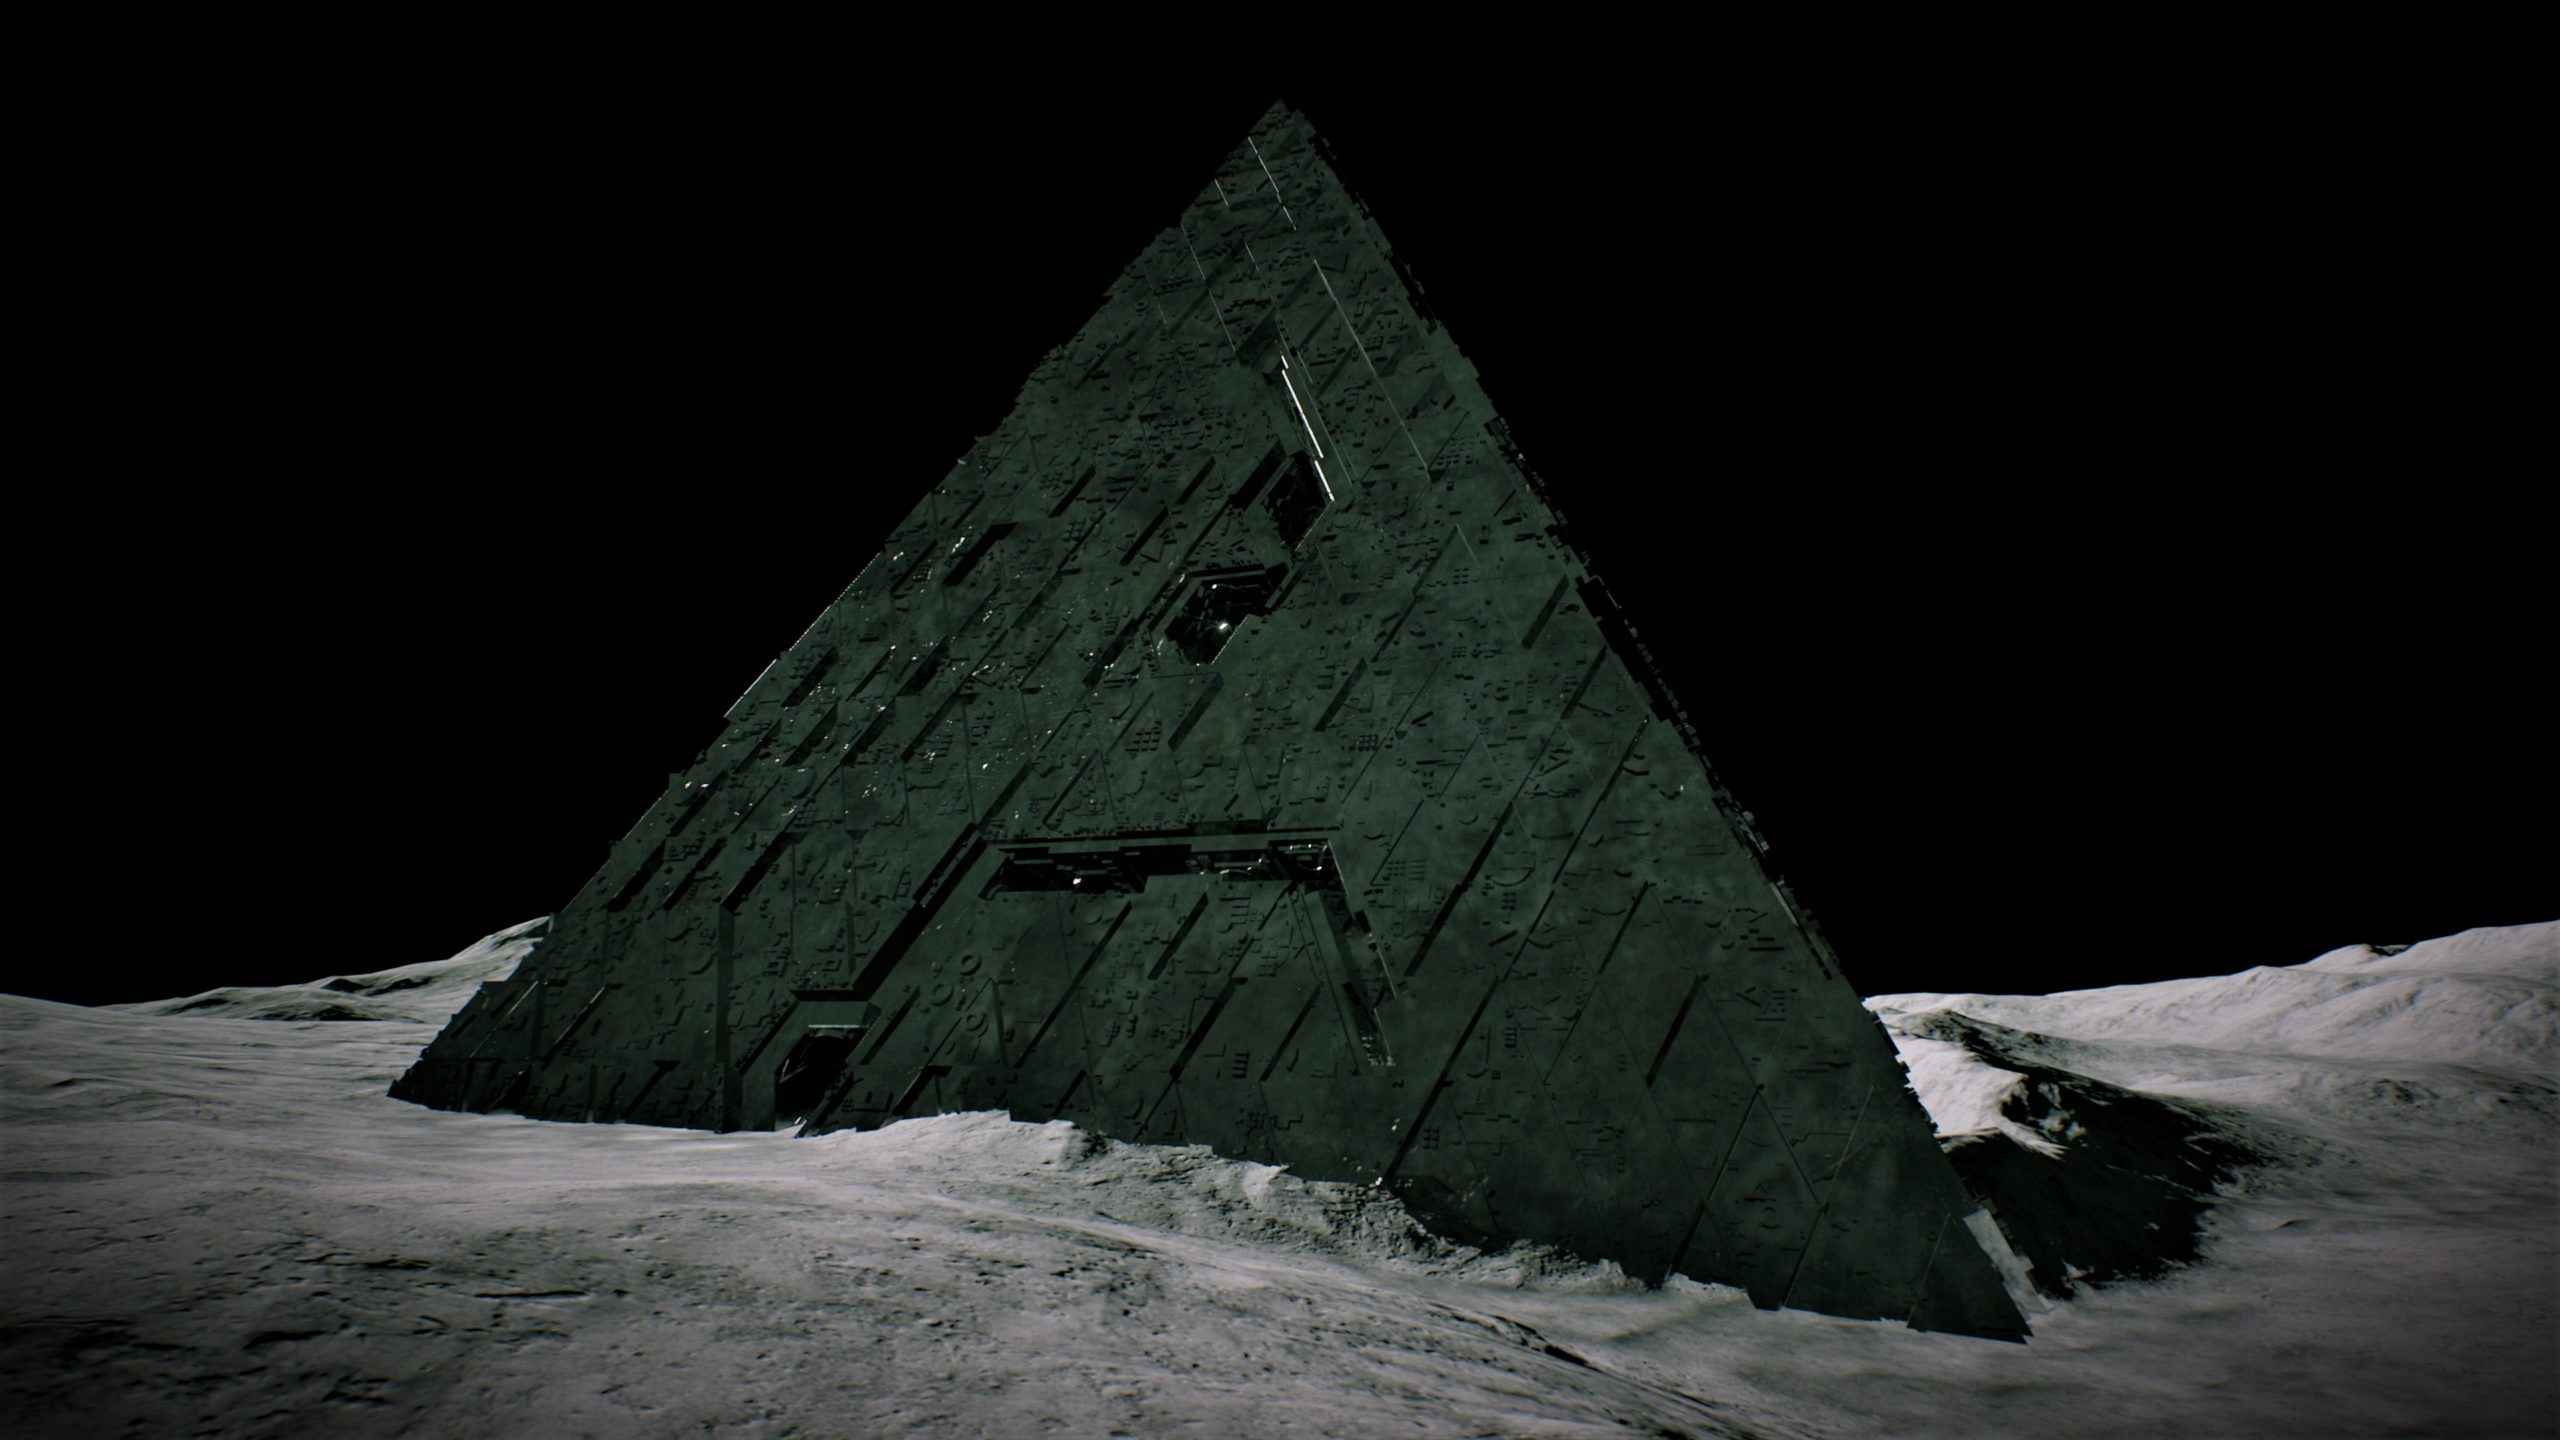 Descubierta una pirámide en el asteroide Bennu y NASA intenta censurar la imagen